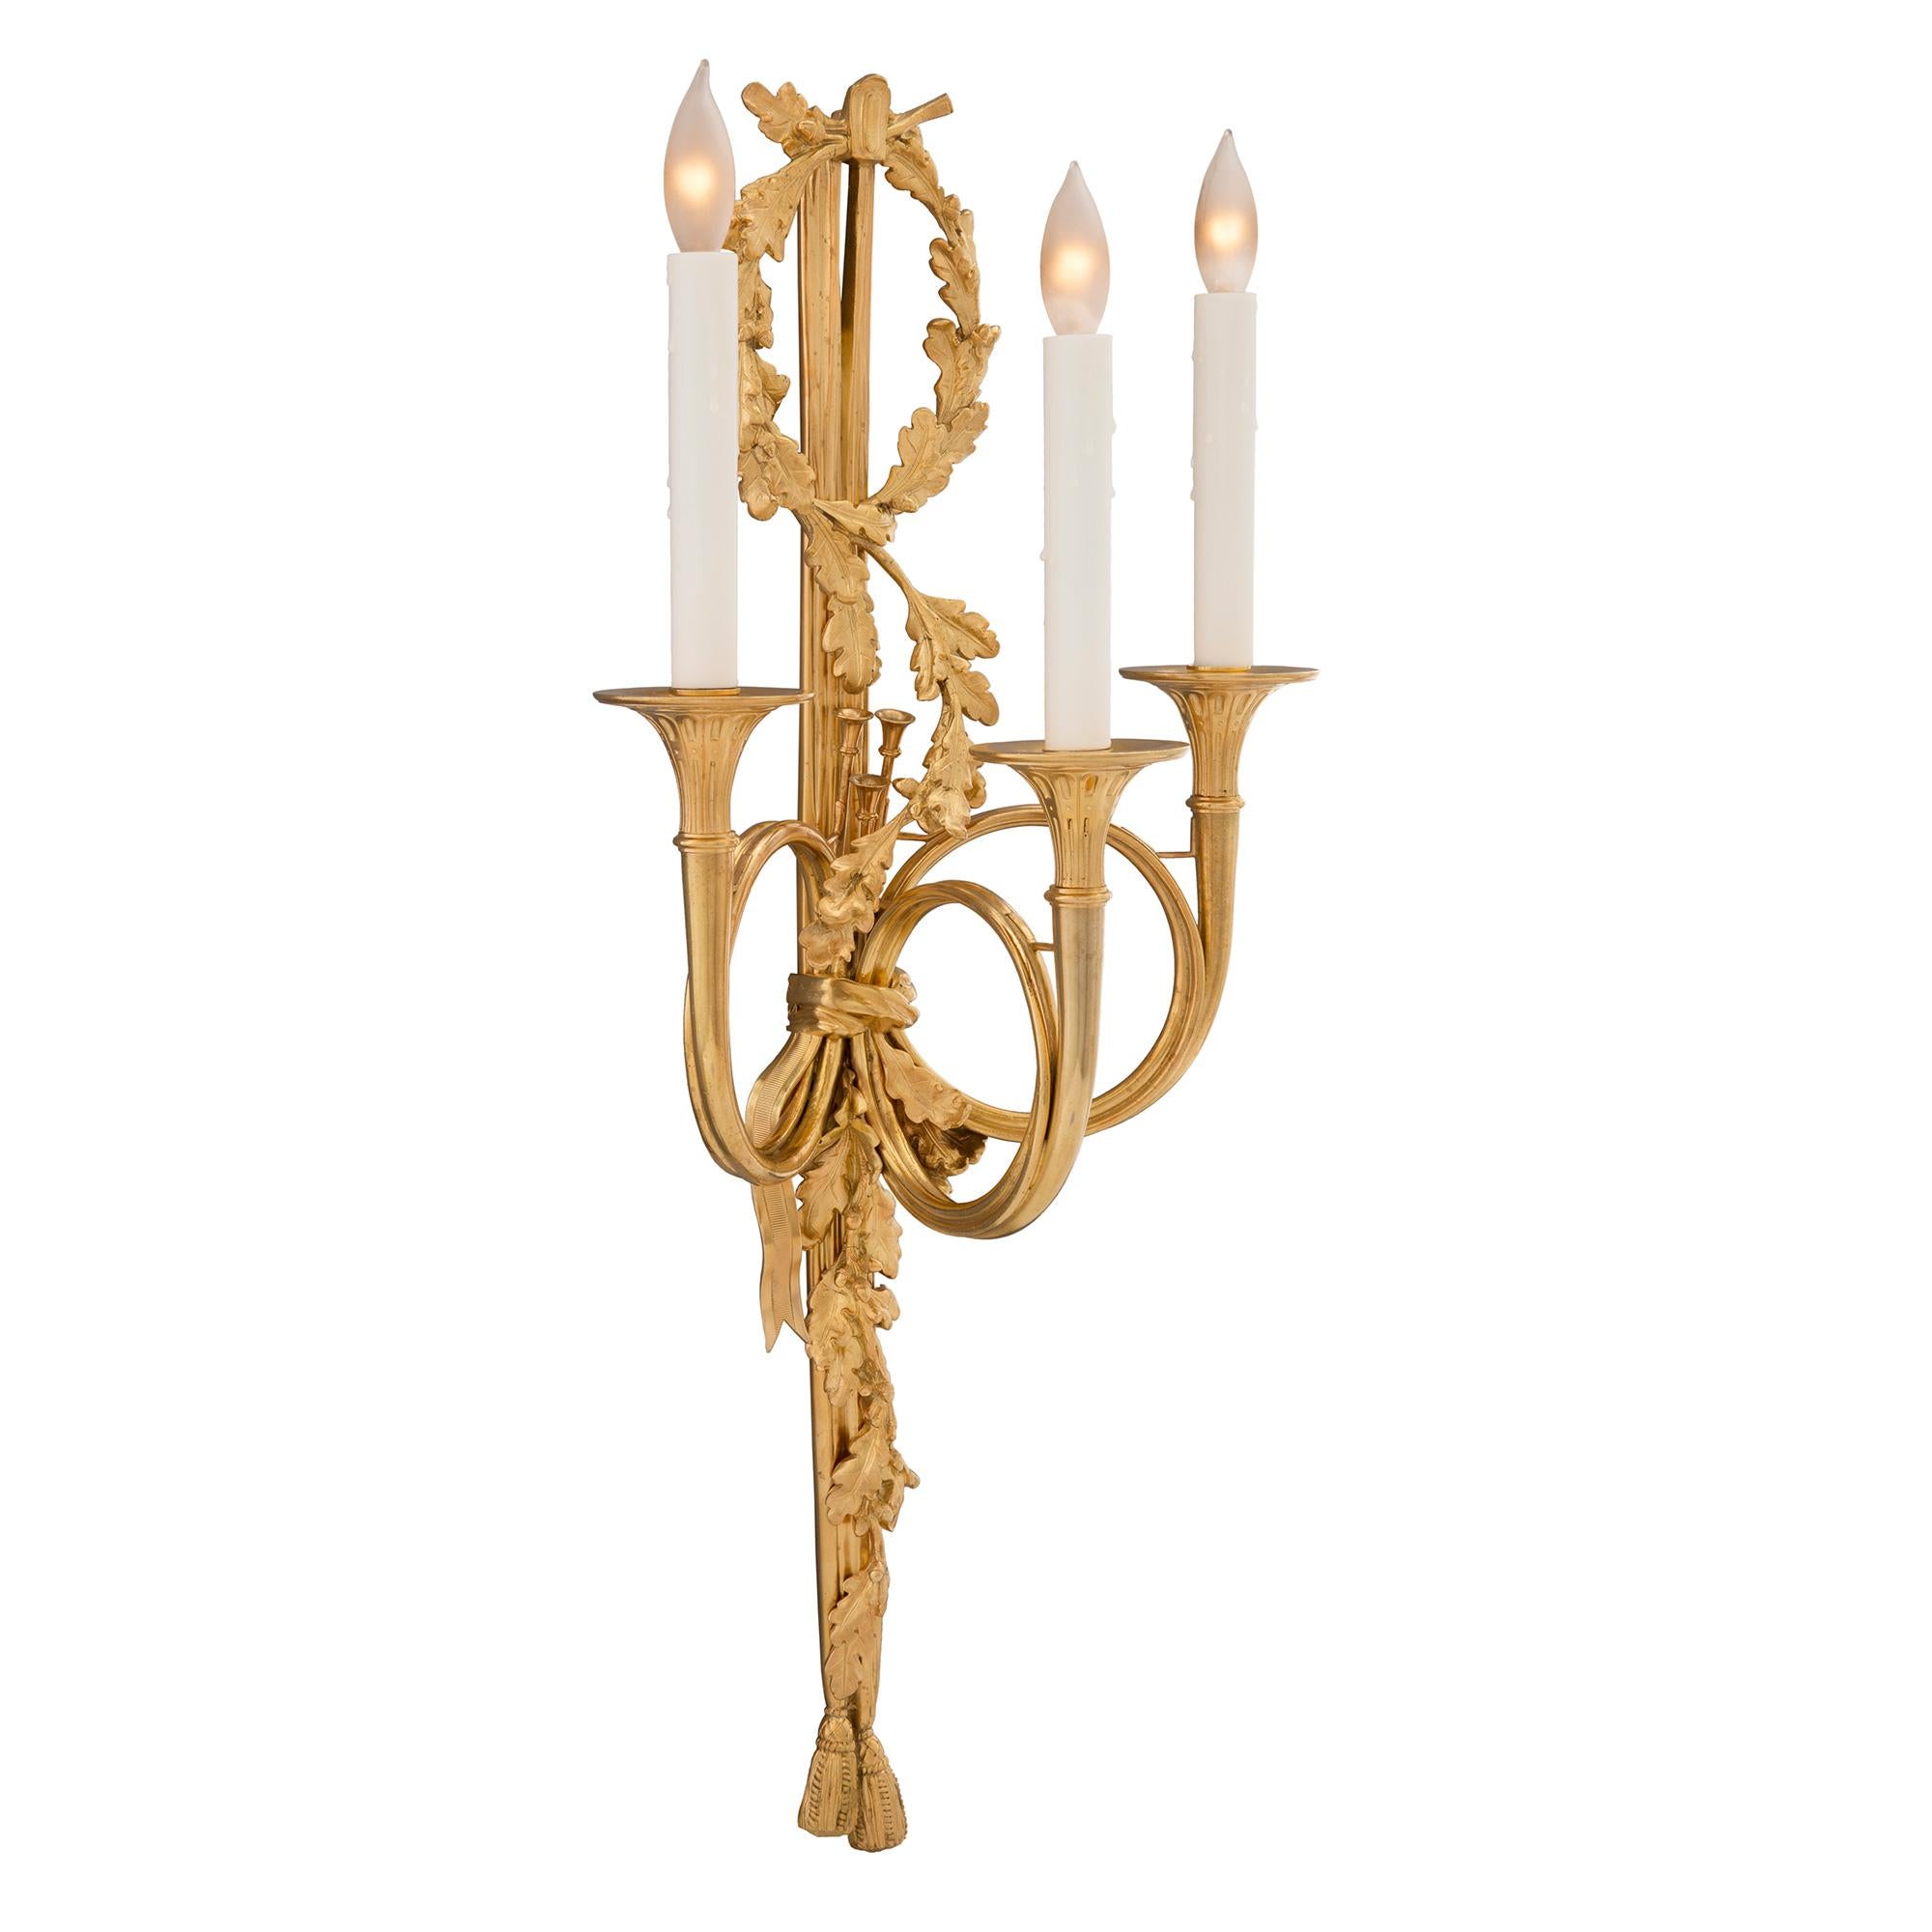 Paire d'appliques à trois bras de lumière en bronze doré, d'après un modèle de Claude Galle, datant du XIXe siècle. Chaque applique est centrée par d'élégants glands inférieurs avec de magnifiques glands et feuilles de chêne richement ciselés qui